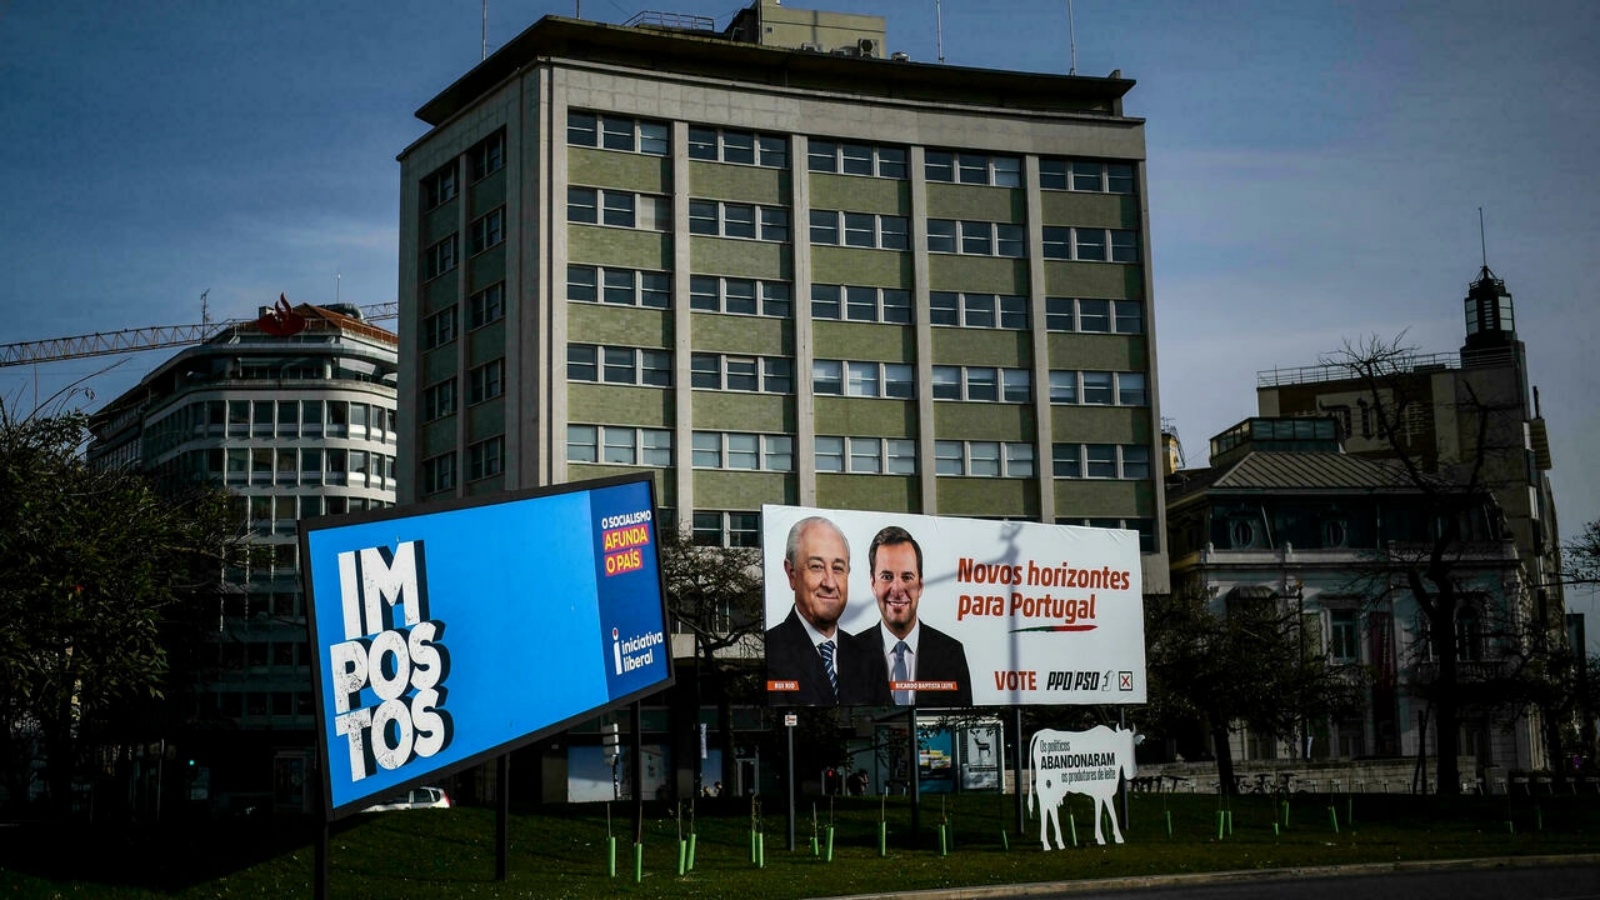 لافتة لمرشحين للانتخابات التشريعية في البرتغال حيث تم توفير خيار التصويت المبكر هذا العام لتقليل الازدحام في يوم الانتخابات بسبب كوفيد